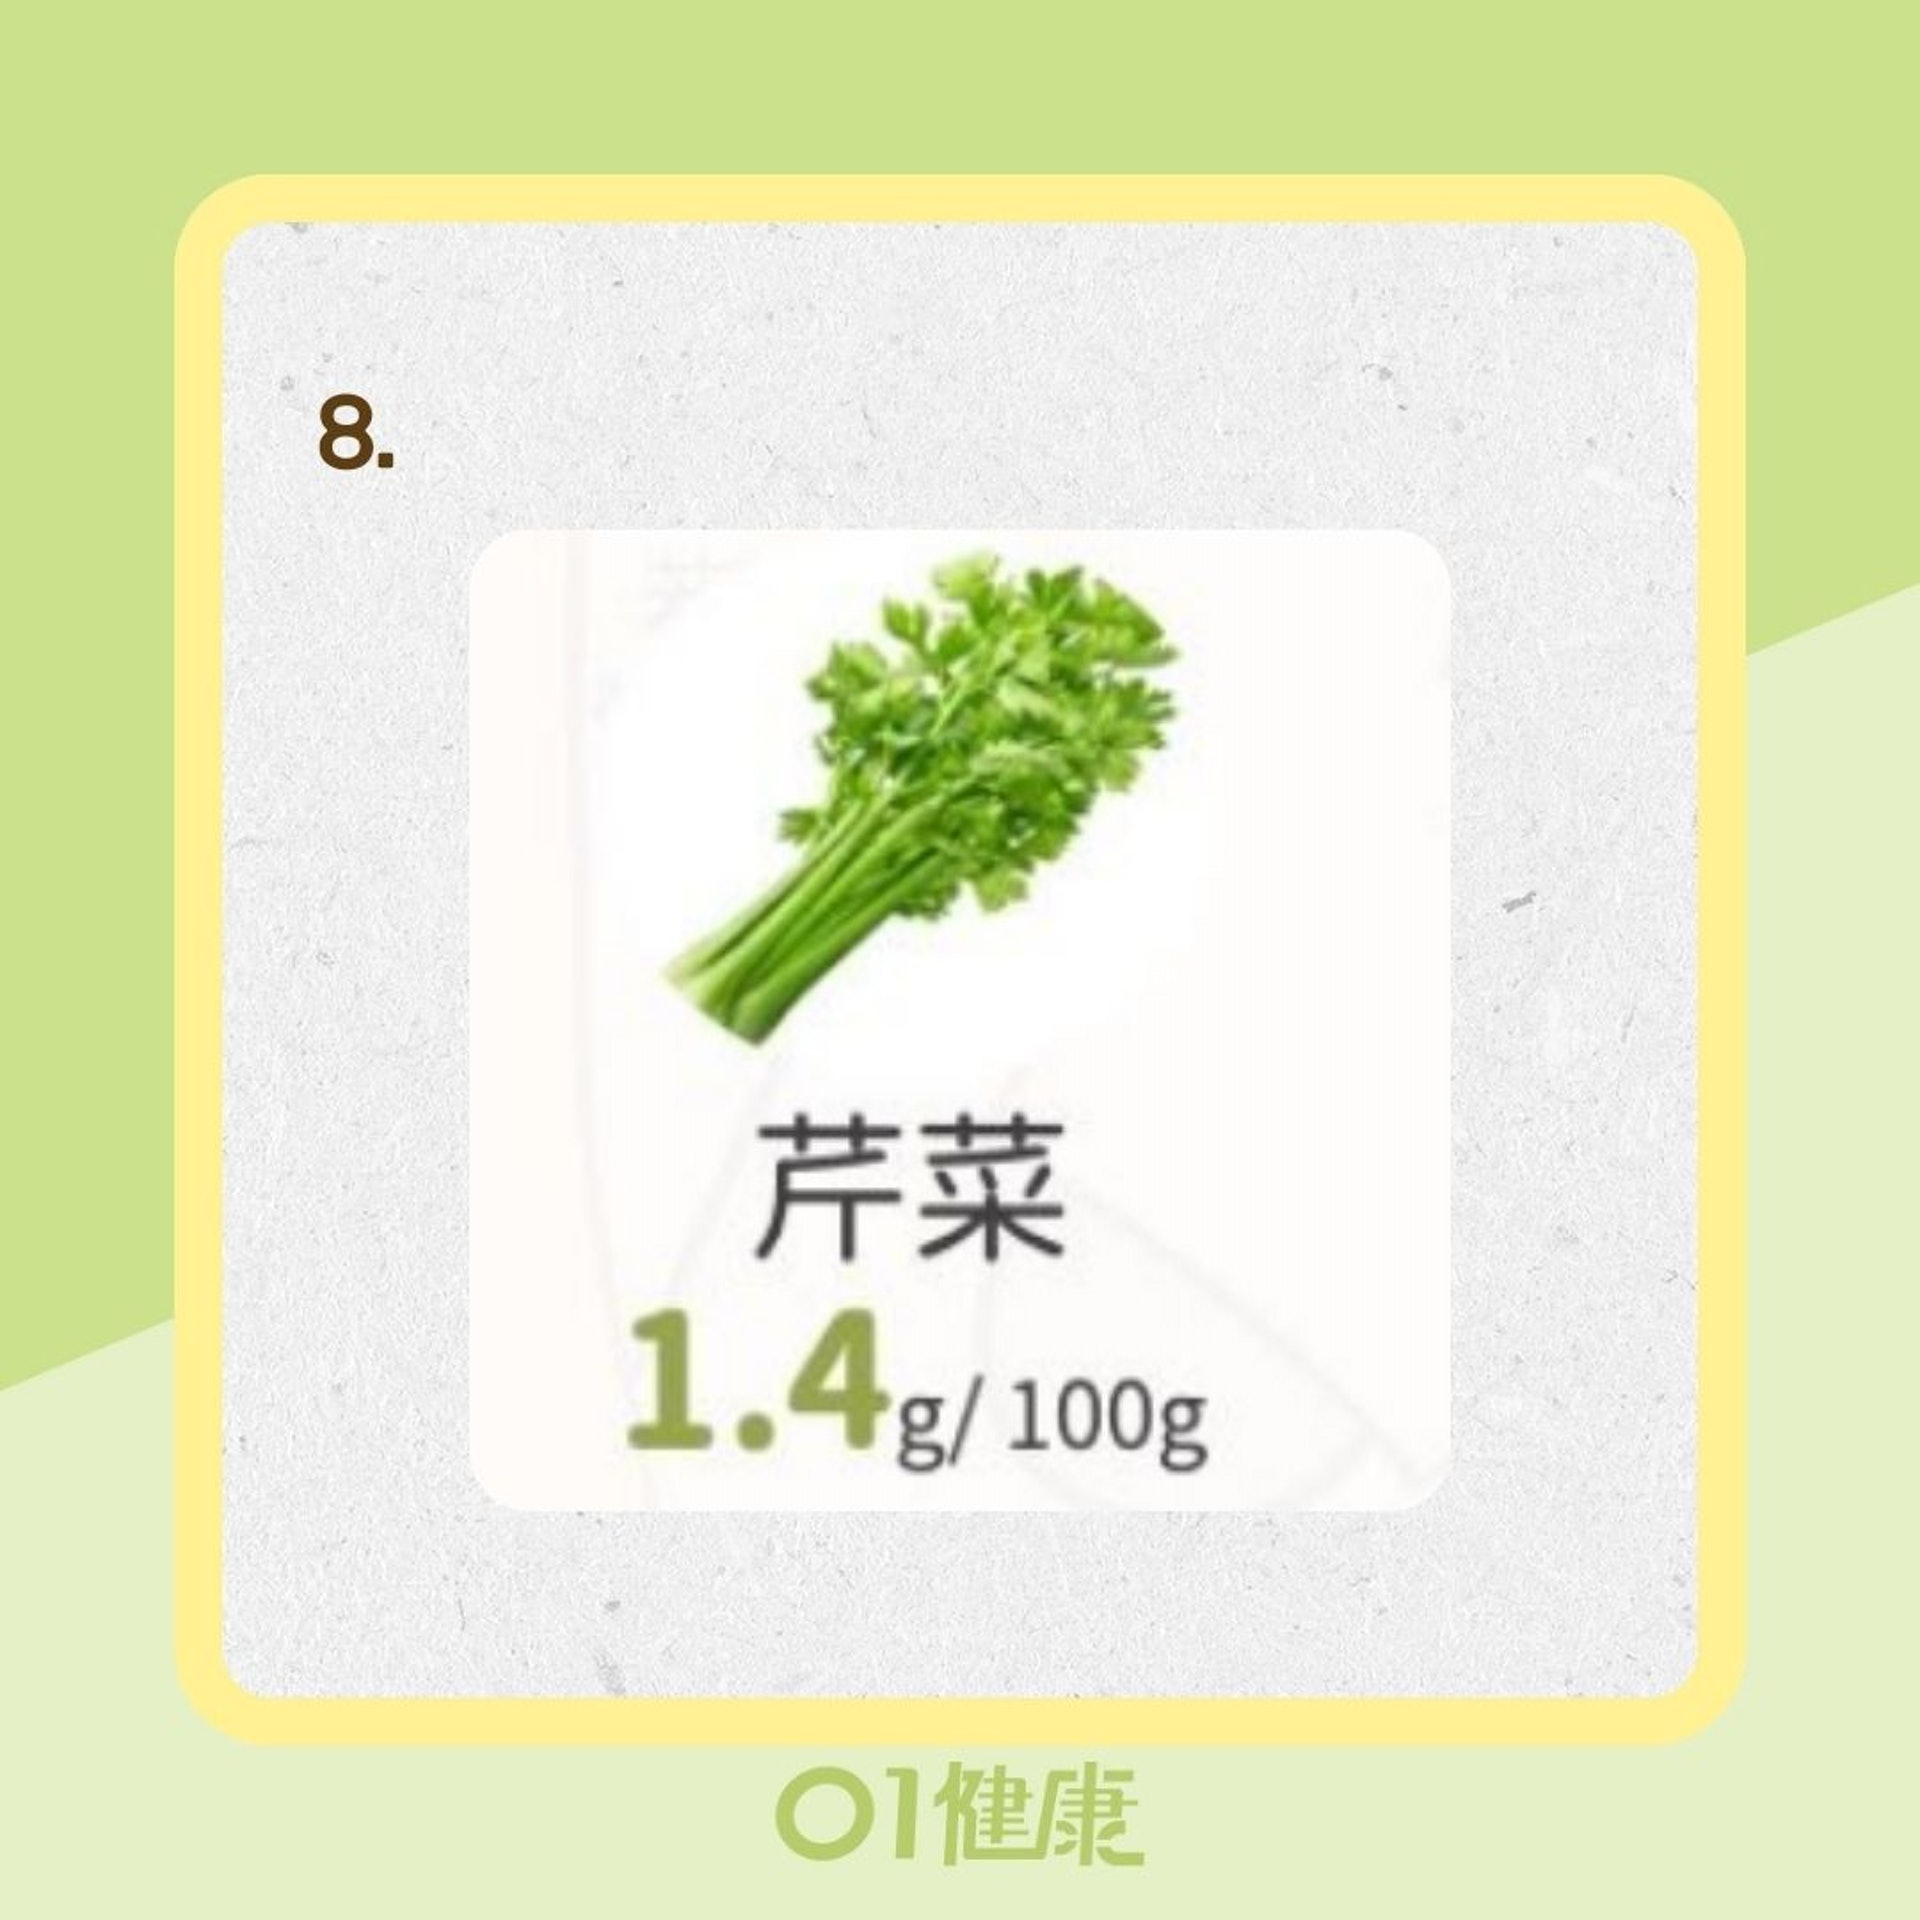 12種蔬菜膳食纖維排行榜（Facebook@葉若懿/Chloe 營養師/ 01製圖）